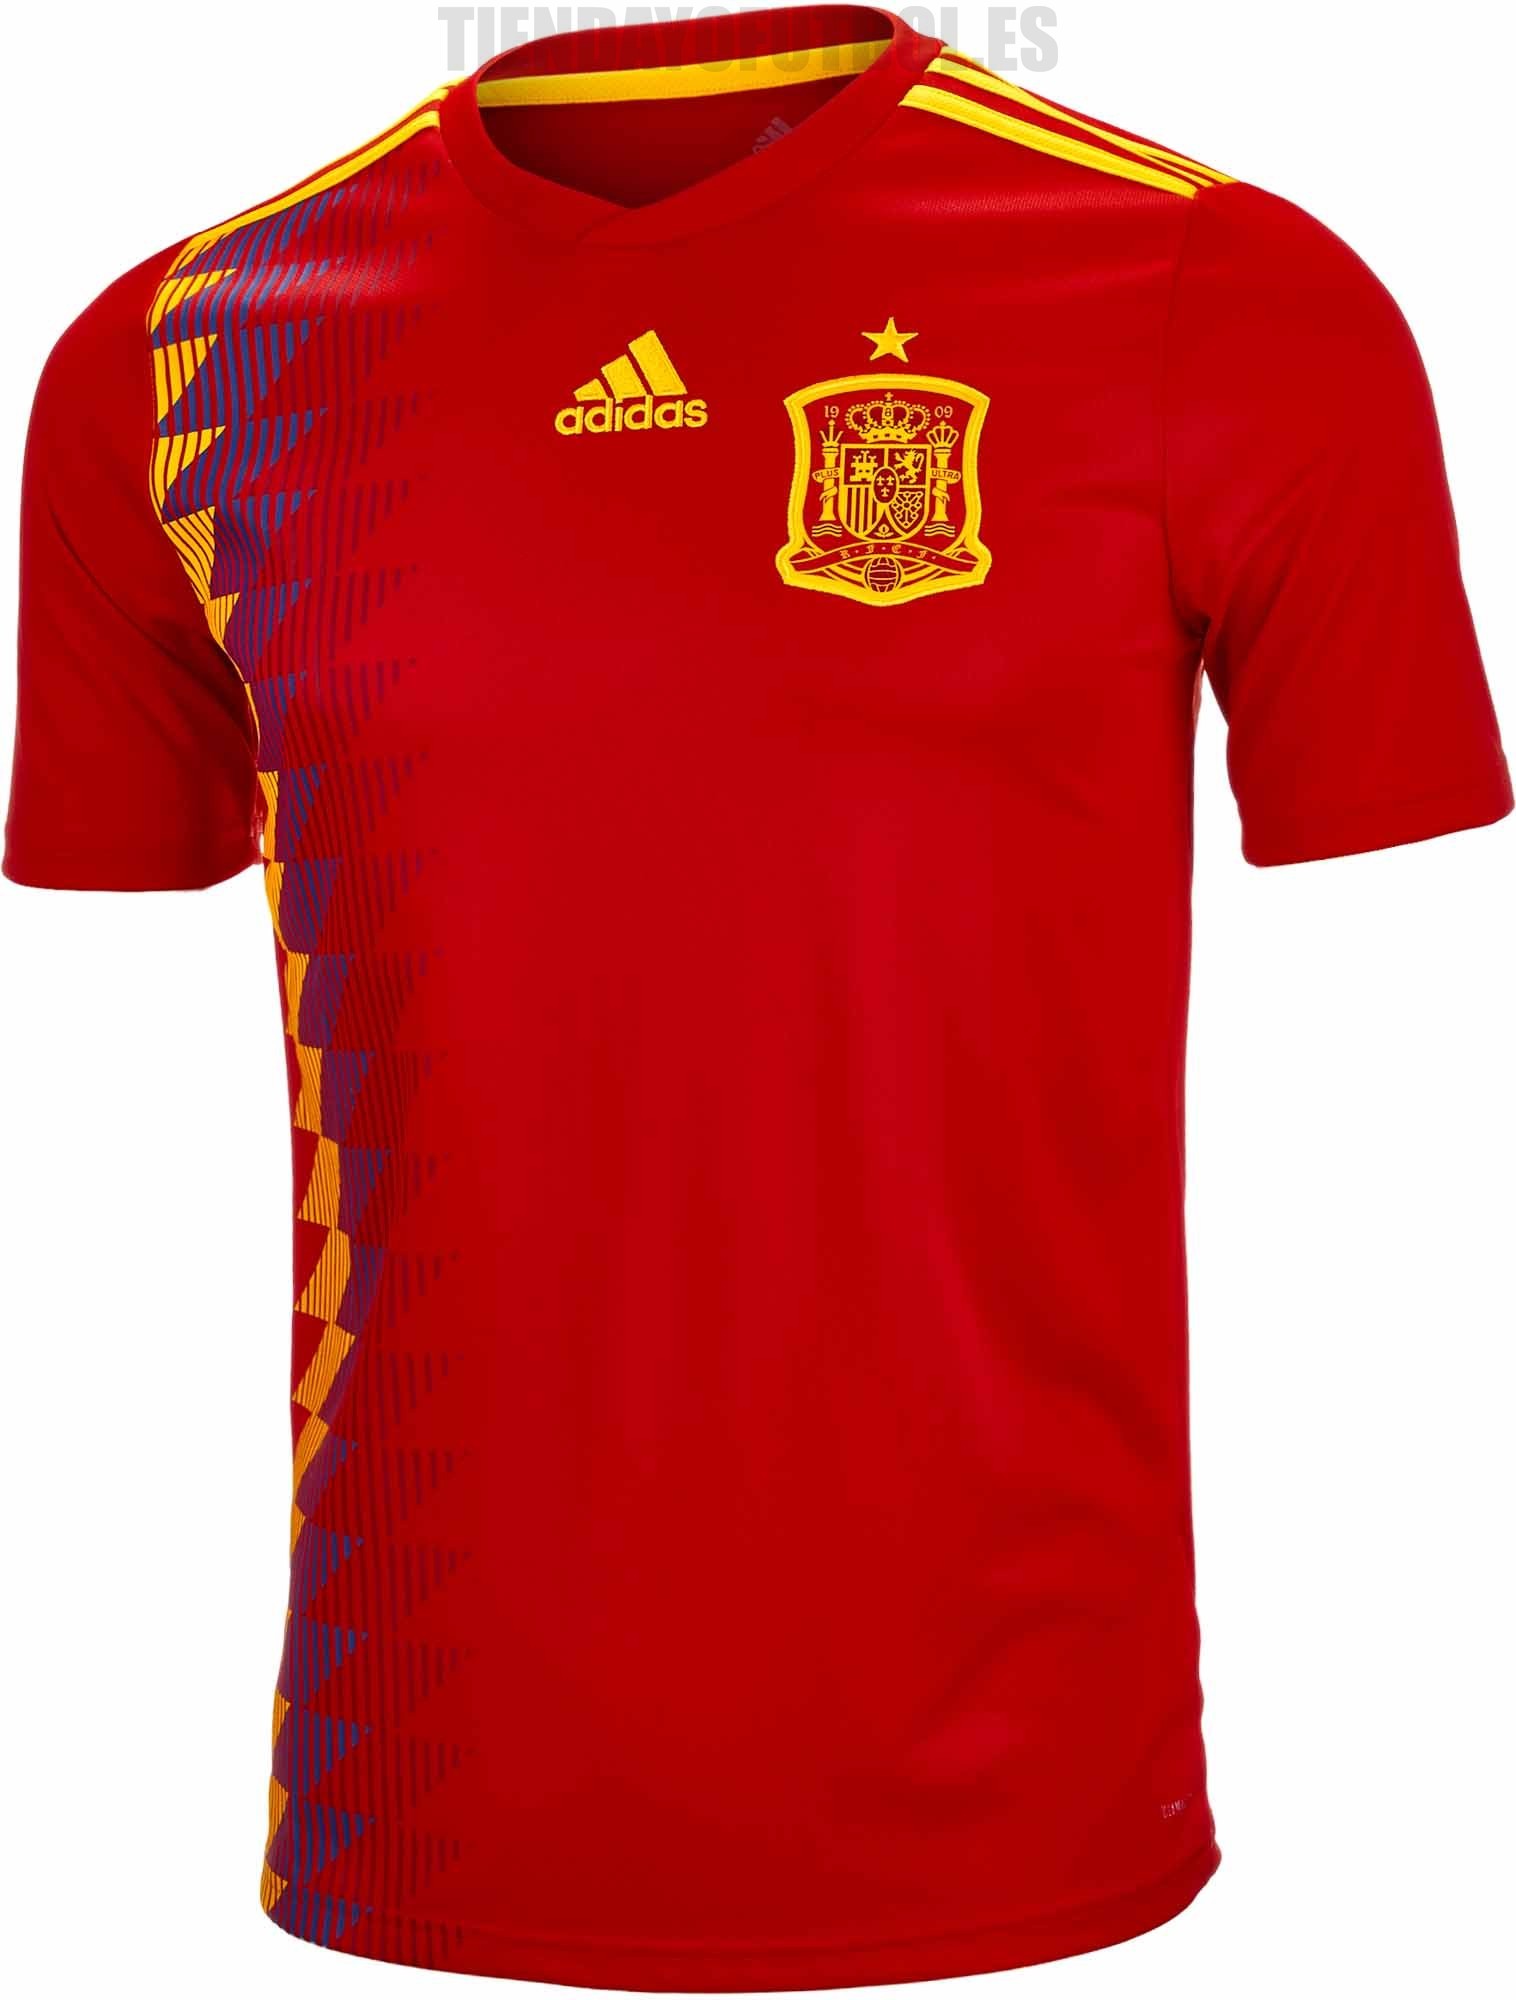 Mundial 2018 camiseta España | Selección camiseta | Camiseta Selección España 2018